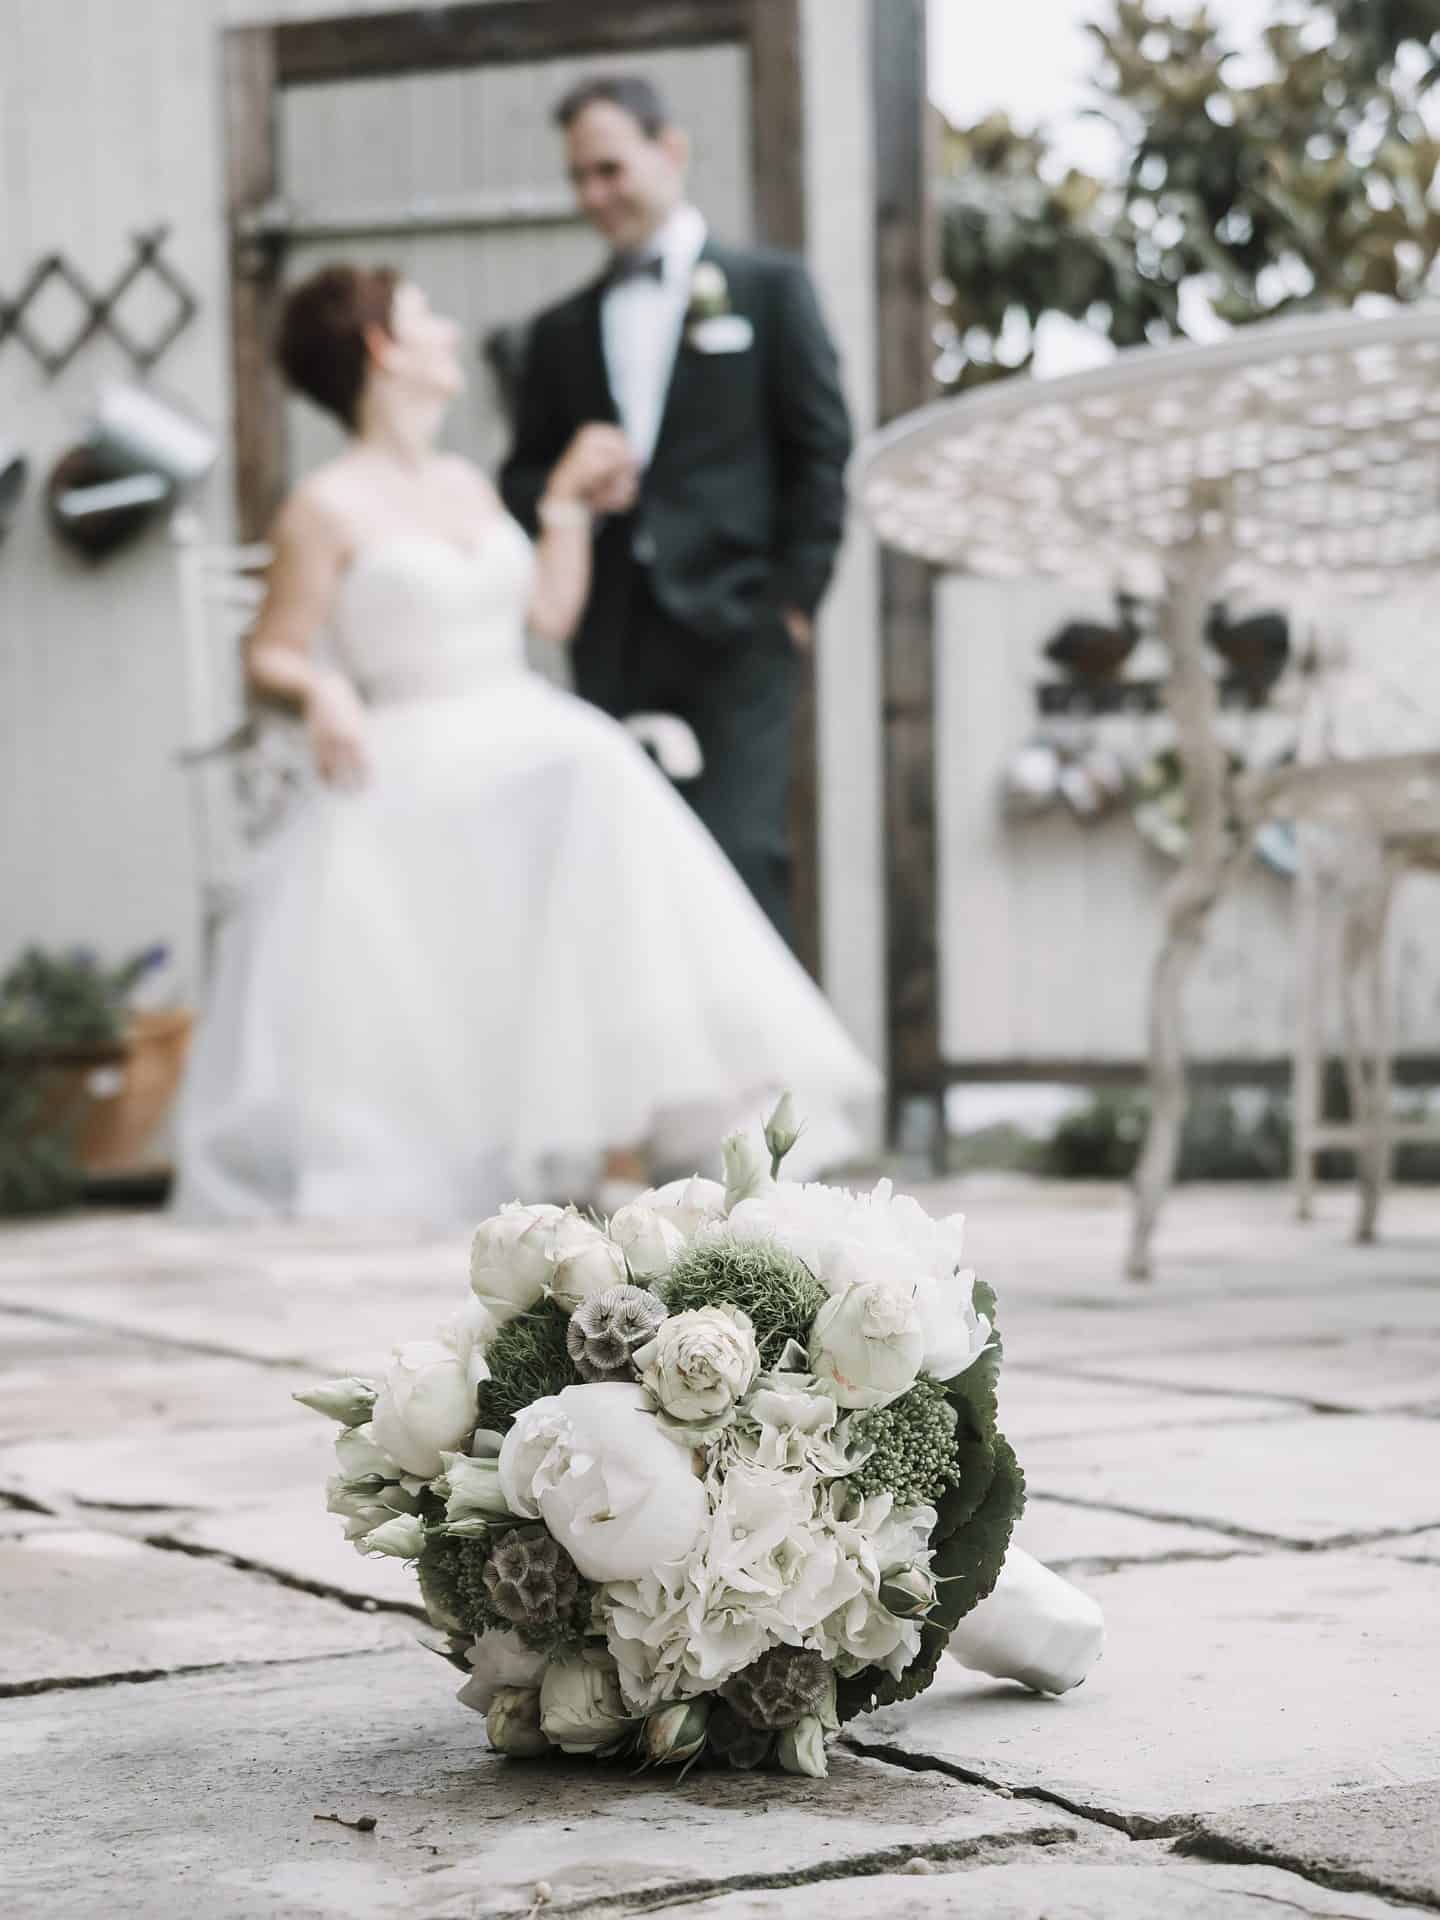 Eine Braut und ein Bräutigam stehen neben einem Blumenstrauß.